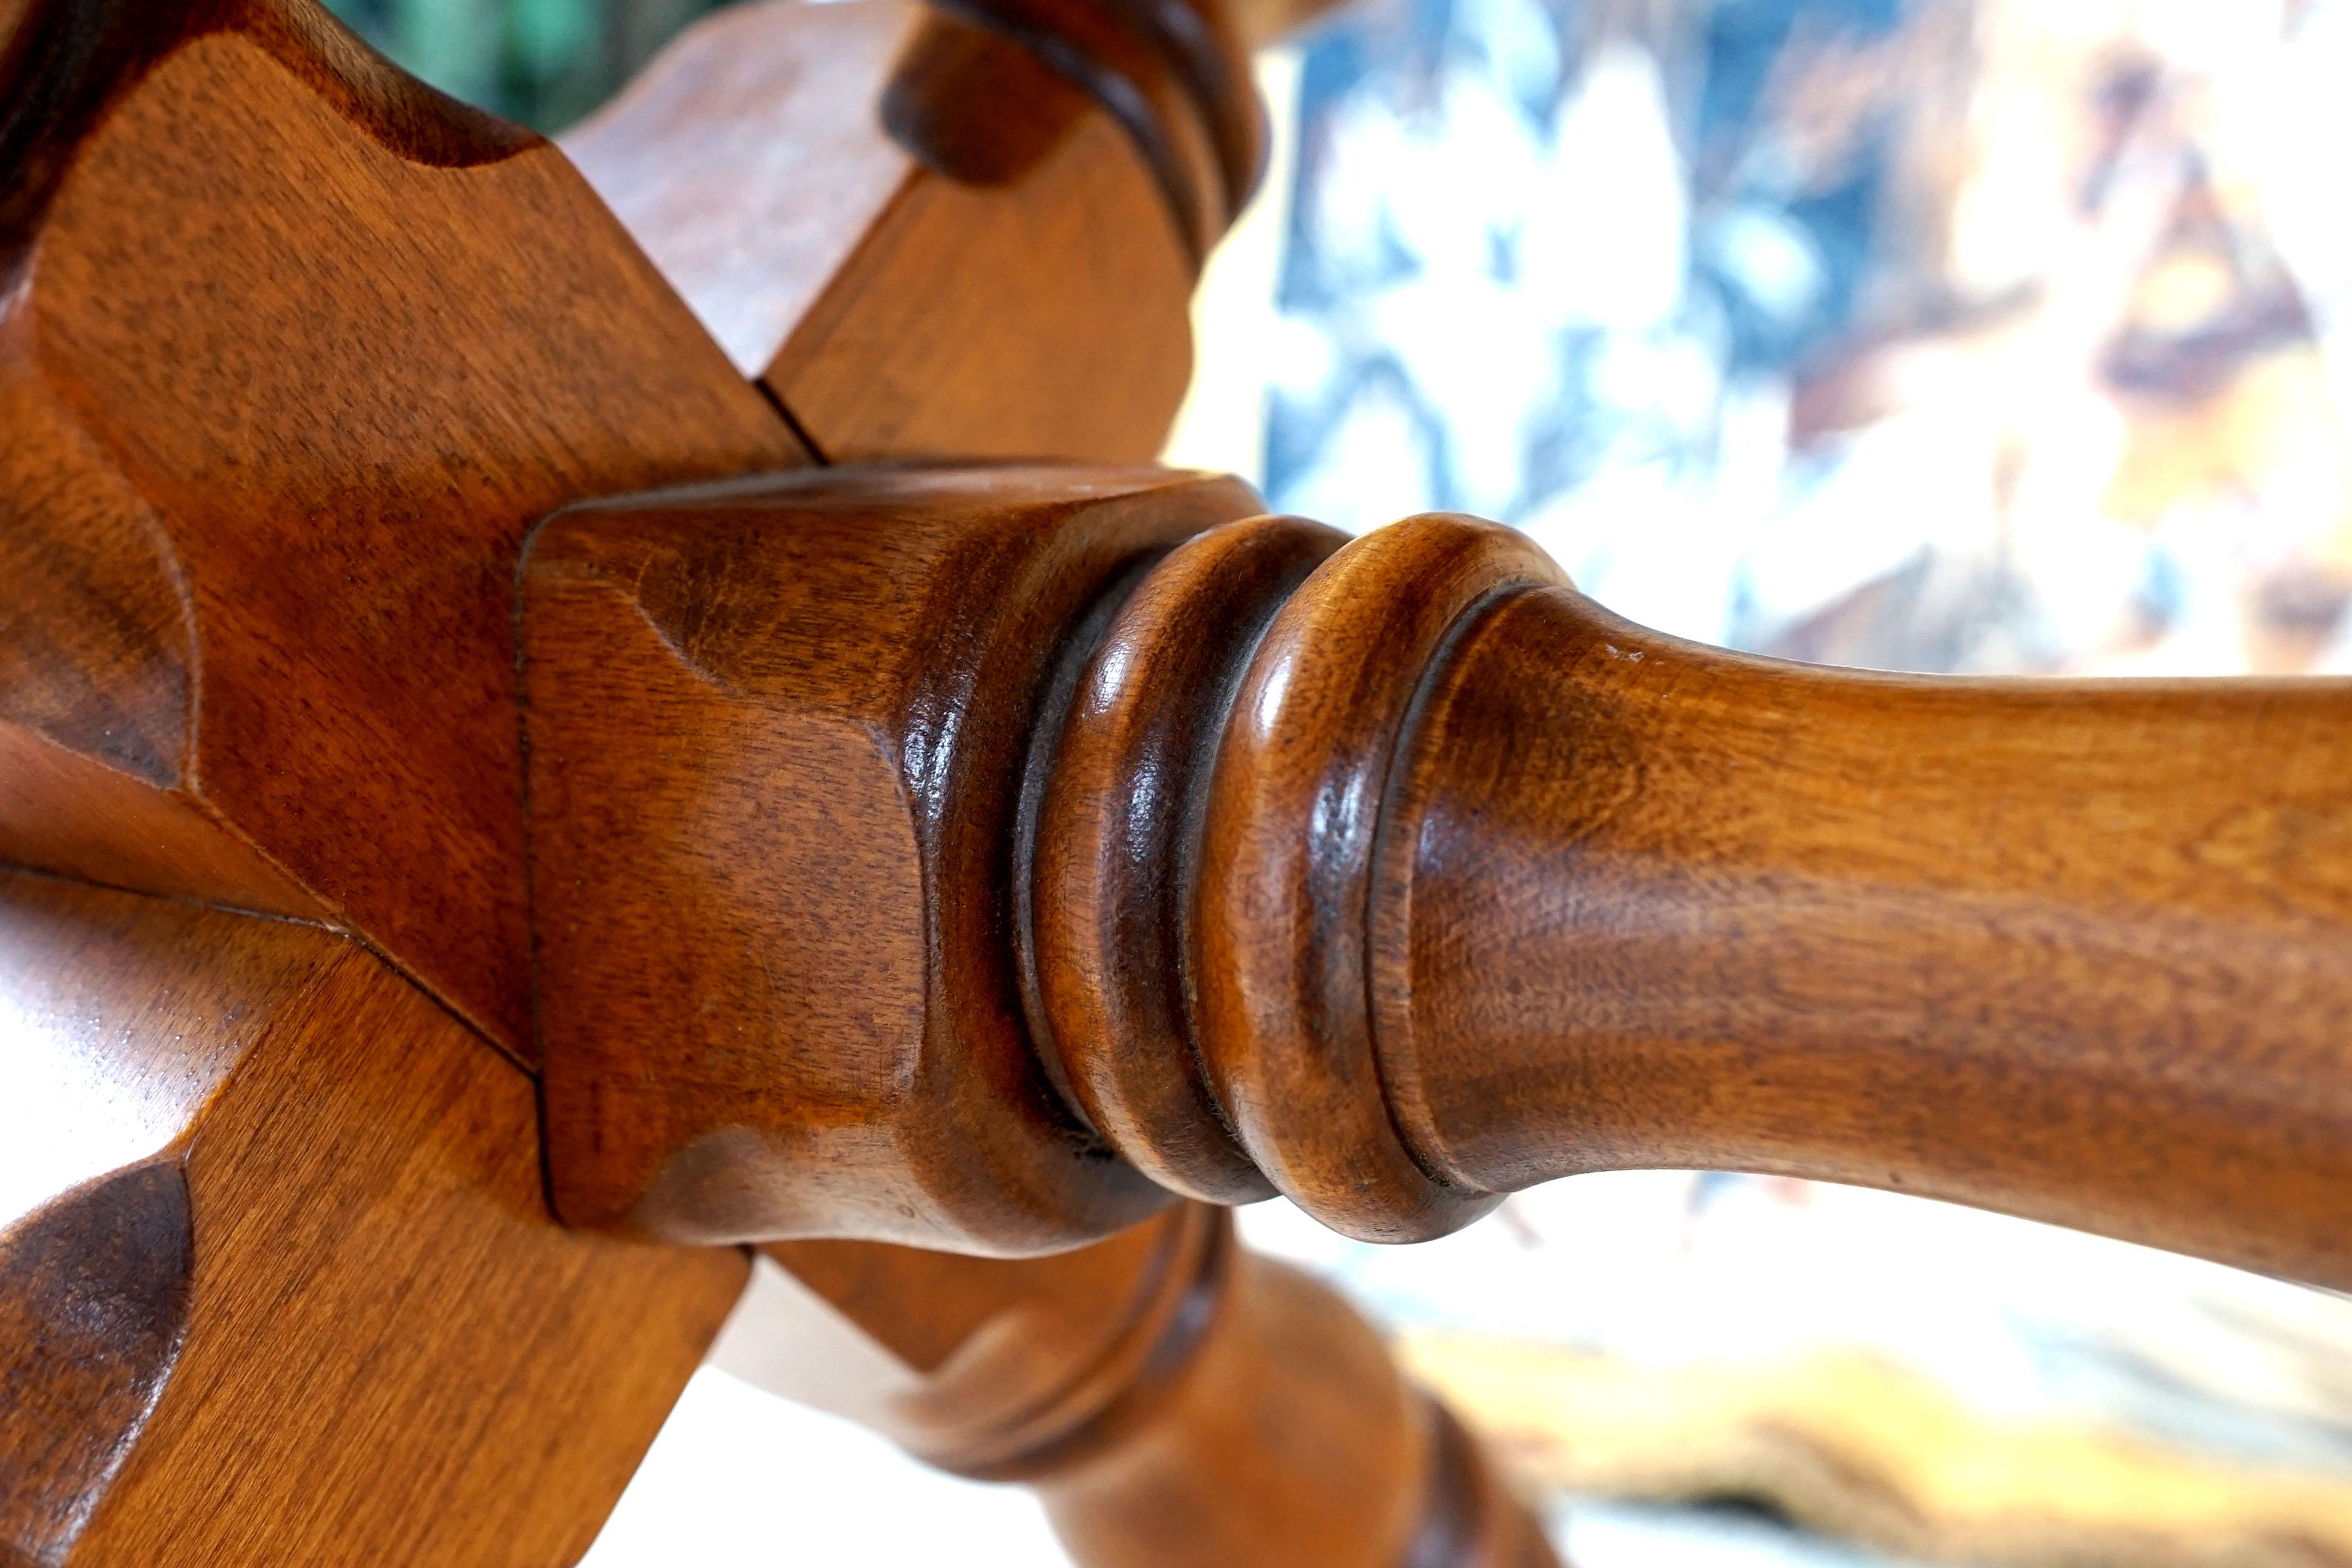 Cette table vintage provient de Cushman Coloni de Bennington, Vermont, et présente un savoir-faire traditionnel américain inspiré du design des premiers meubles américains. Le bois, le savoir-faire et le design témoignent de la haute qualité et du